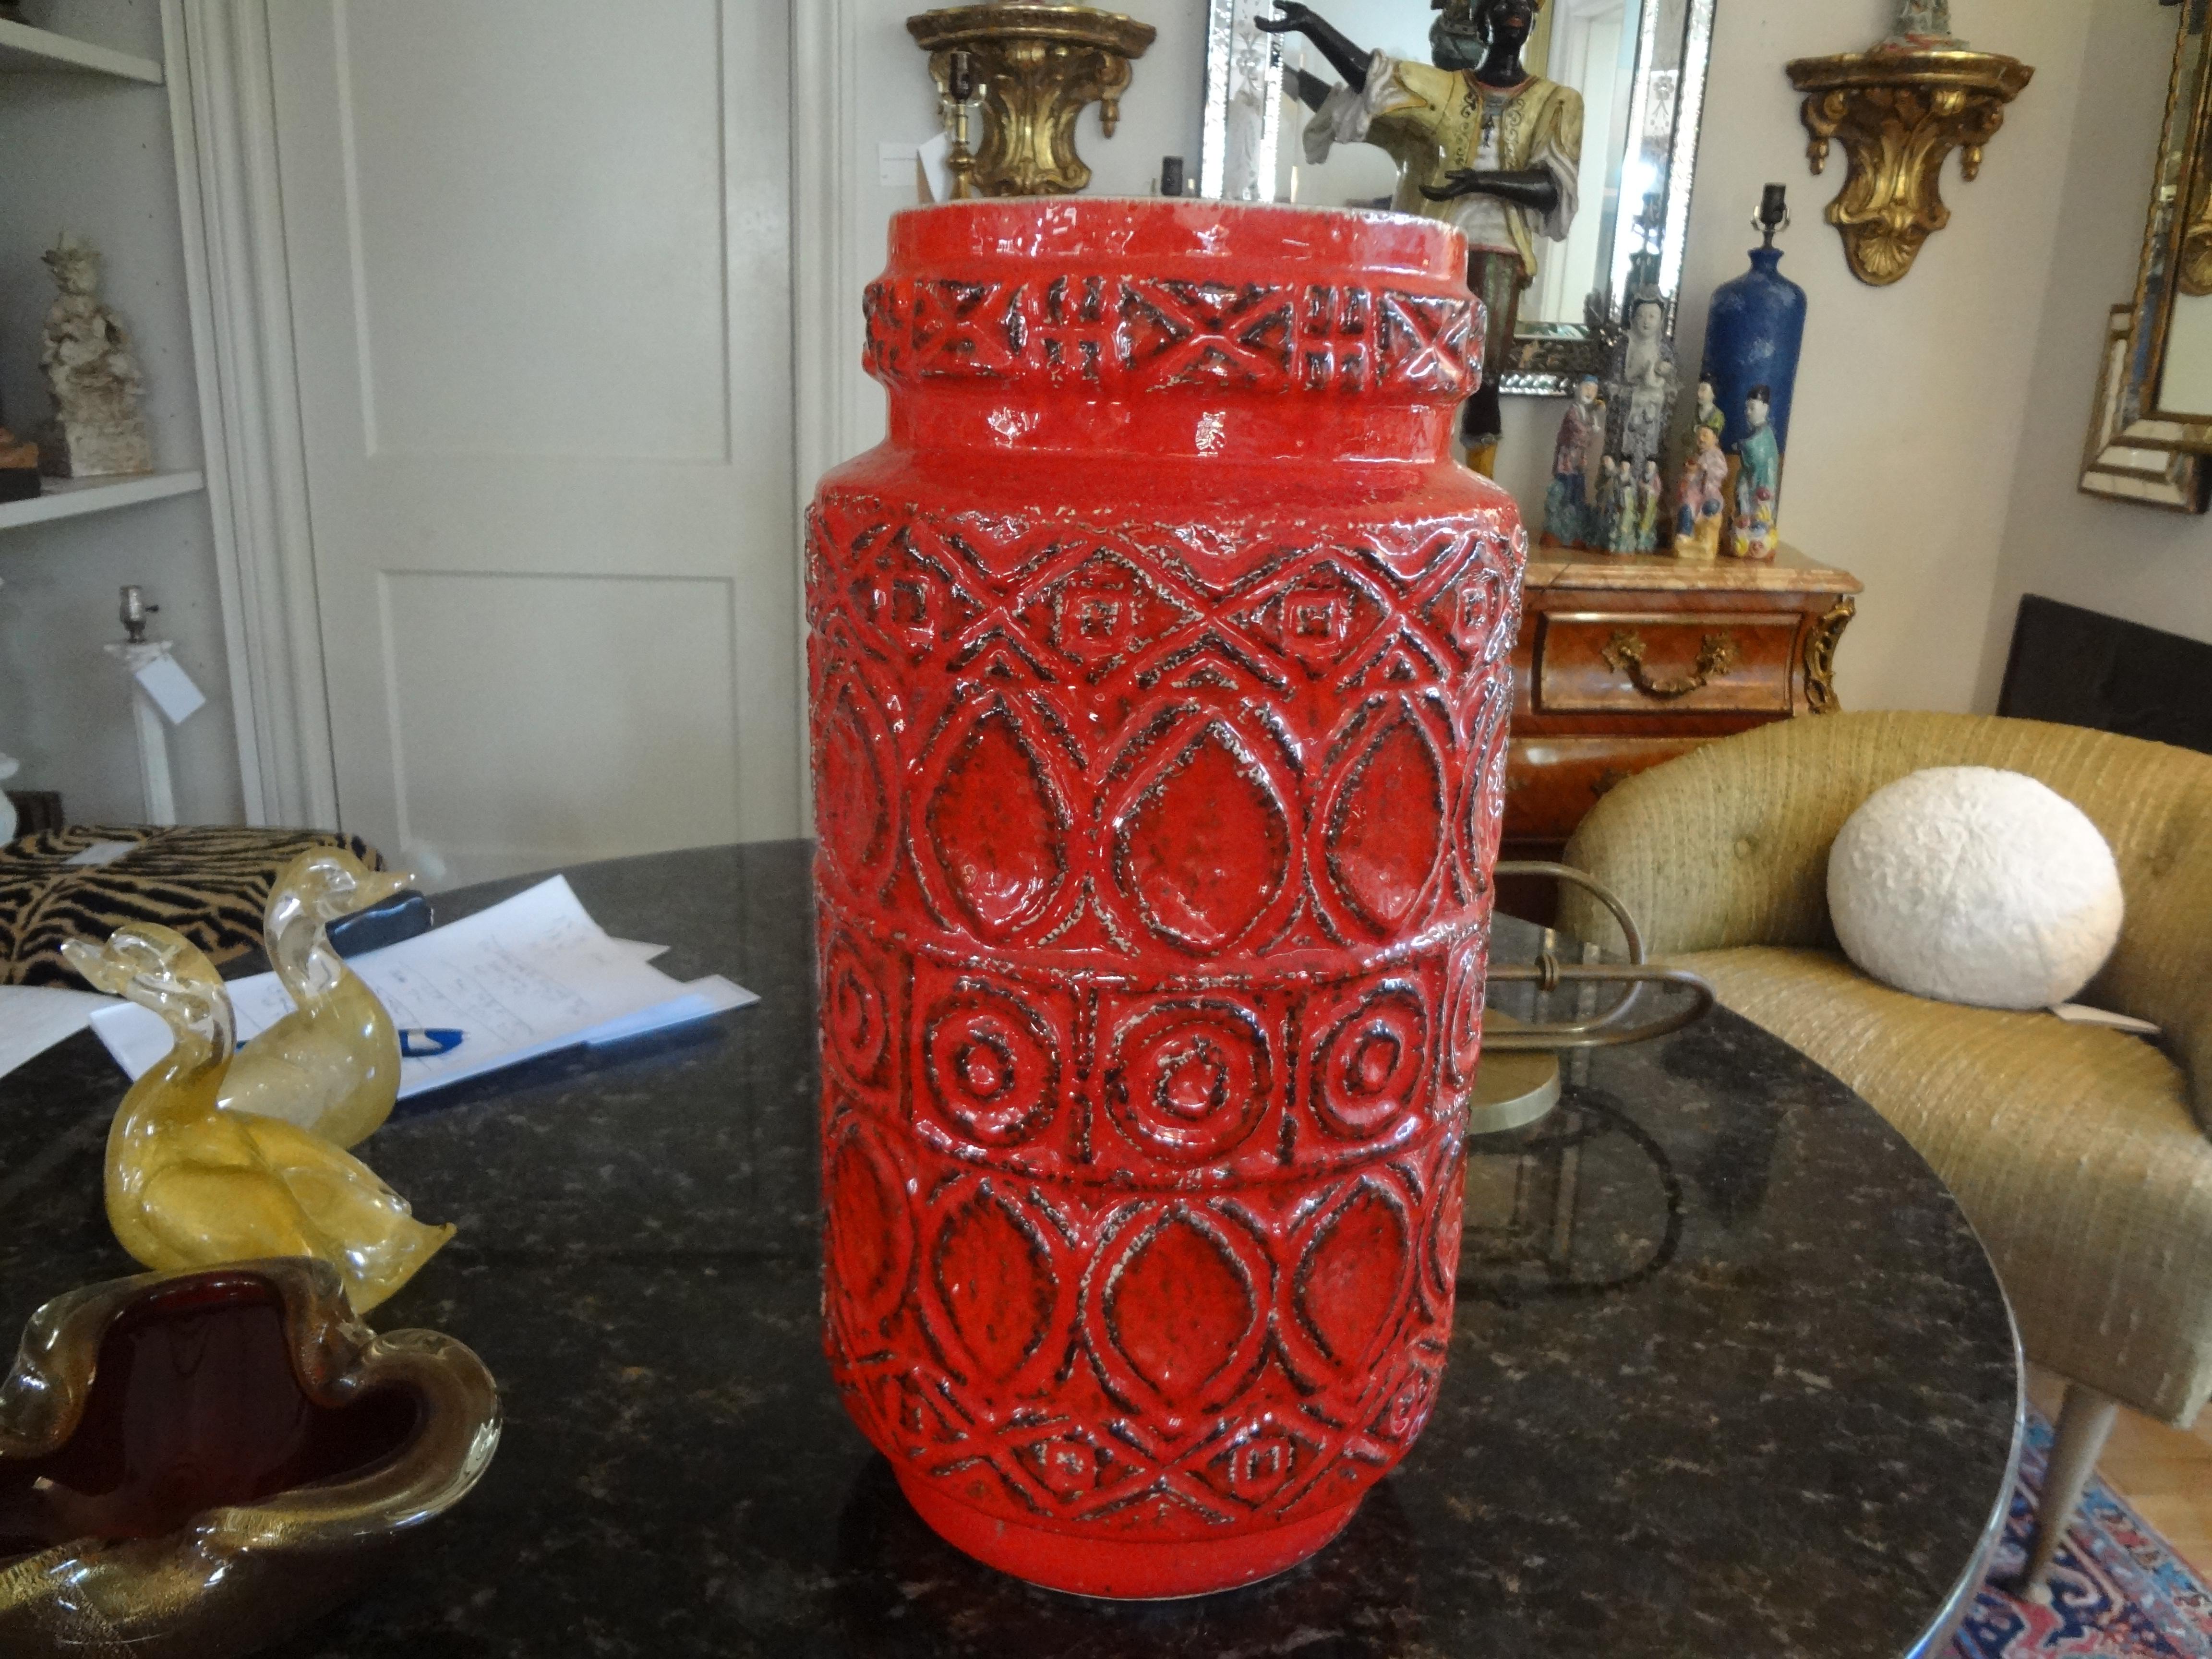 Grand vase en poterie émaillée de l'Allemagne de l'Ouest du milieu du siècle dernier.
Superbe grand vase en poterie ouest-allemande moderne du milieu du siècle, émaillé rouge tomate, avec un superbe décor géométrique stylisé.